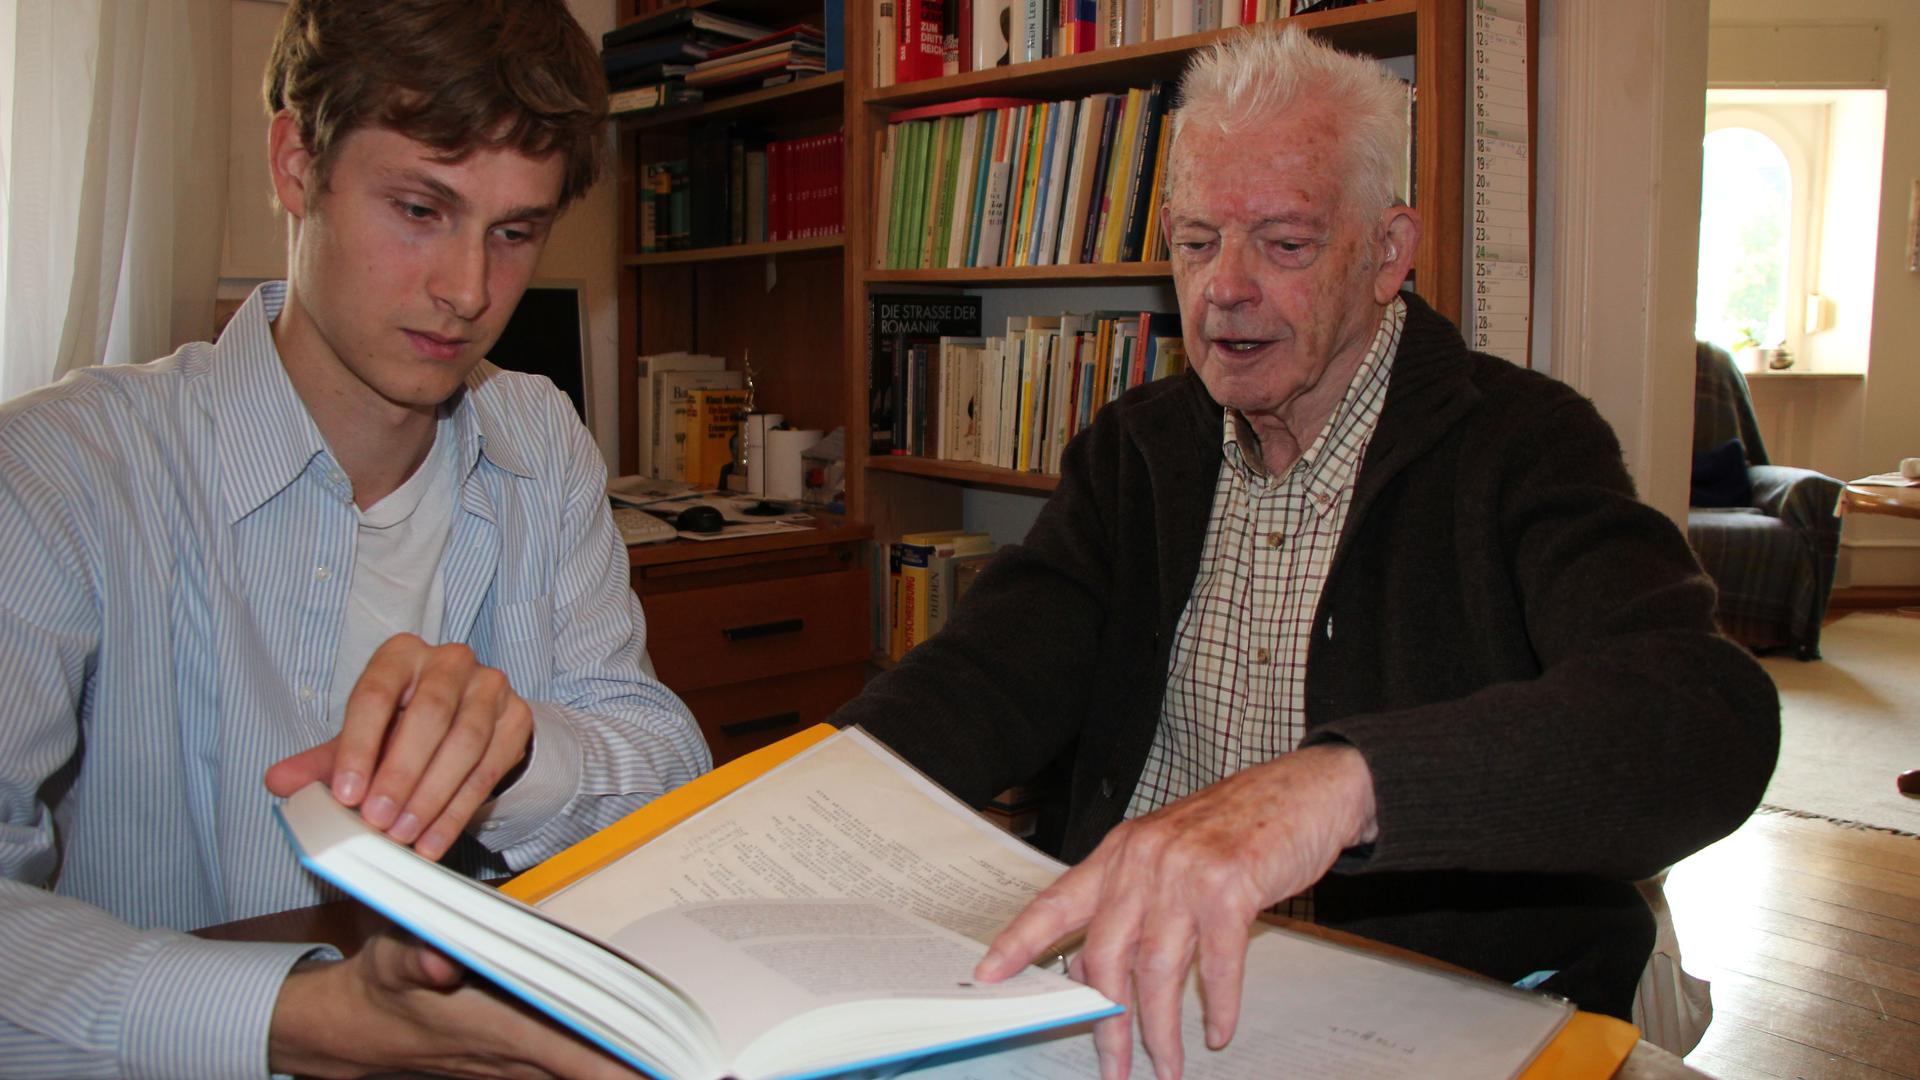 Generationen-Projekt: Hermann Stimmler (95) aus Rastatt hat ein Autobiografie über seine Kindheit und Jugend im Nationalsozialismus geschrieben. Sein Enkel Moritz Schottmüller (27) hat das Buch gestaltet.